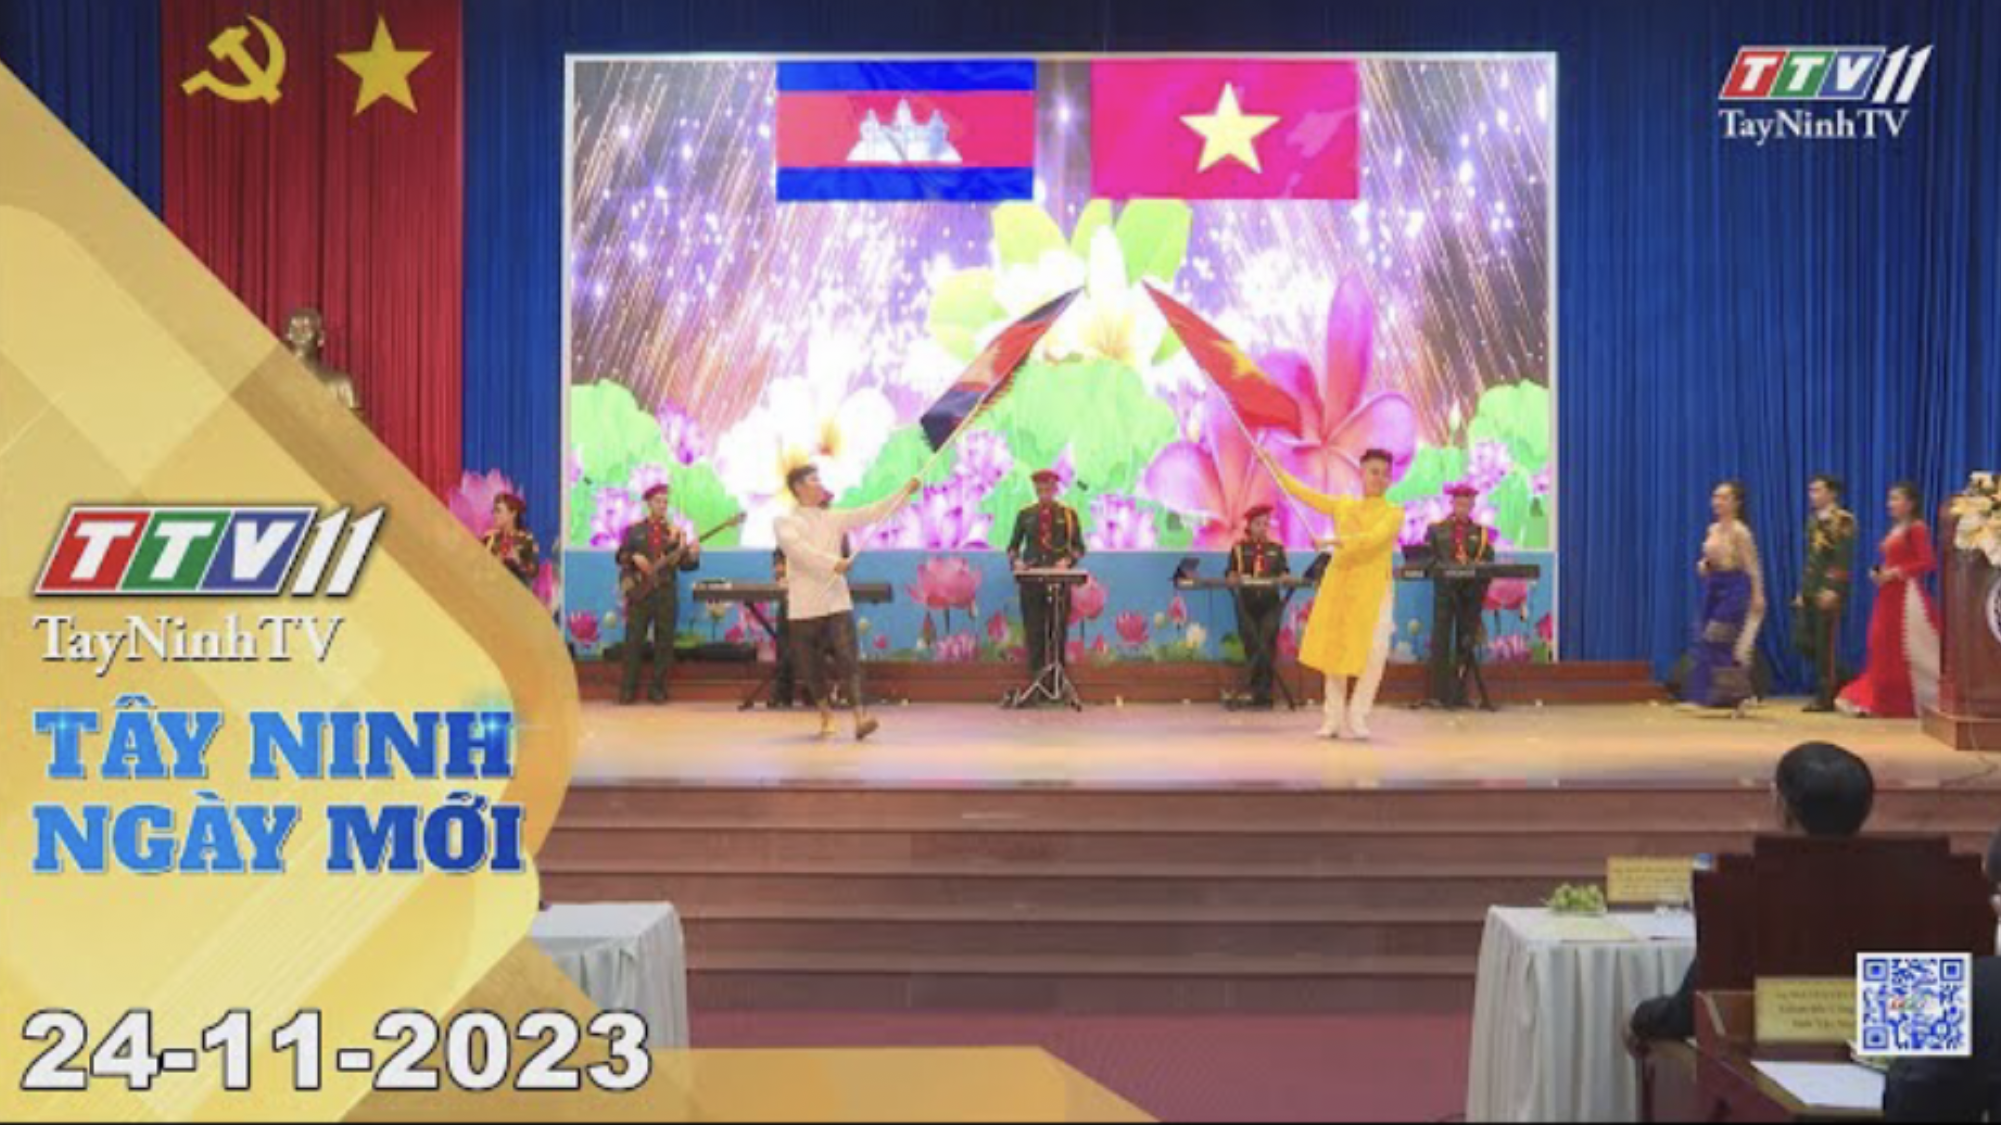 Tây Ninh ngày mới 24-11-2023 | Tin tức hôm nay | TayNinhTV